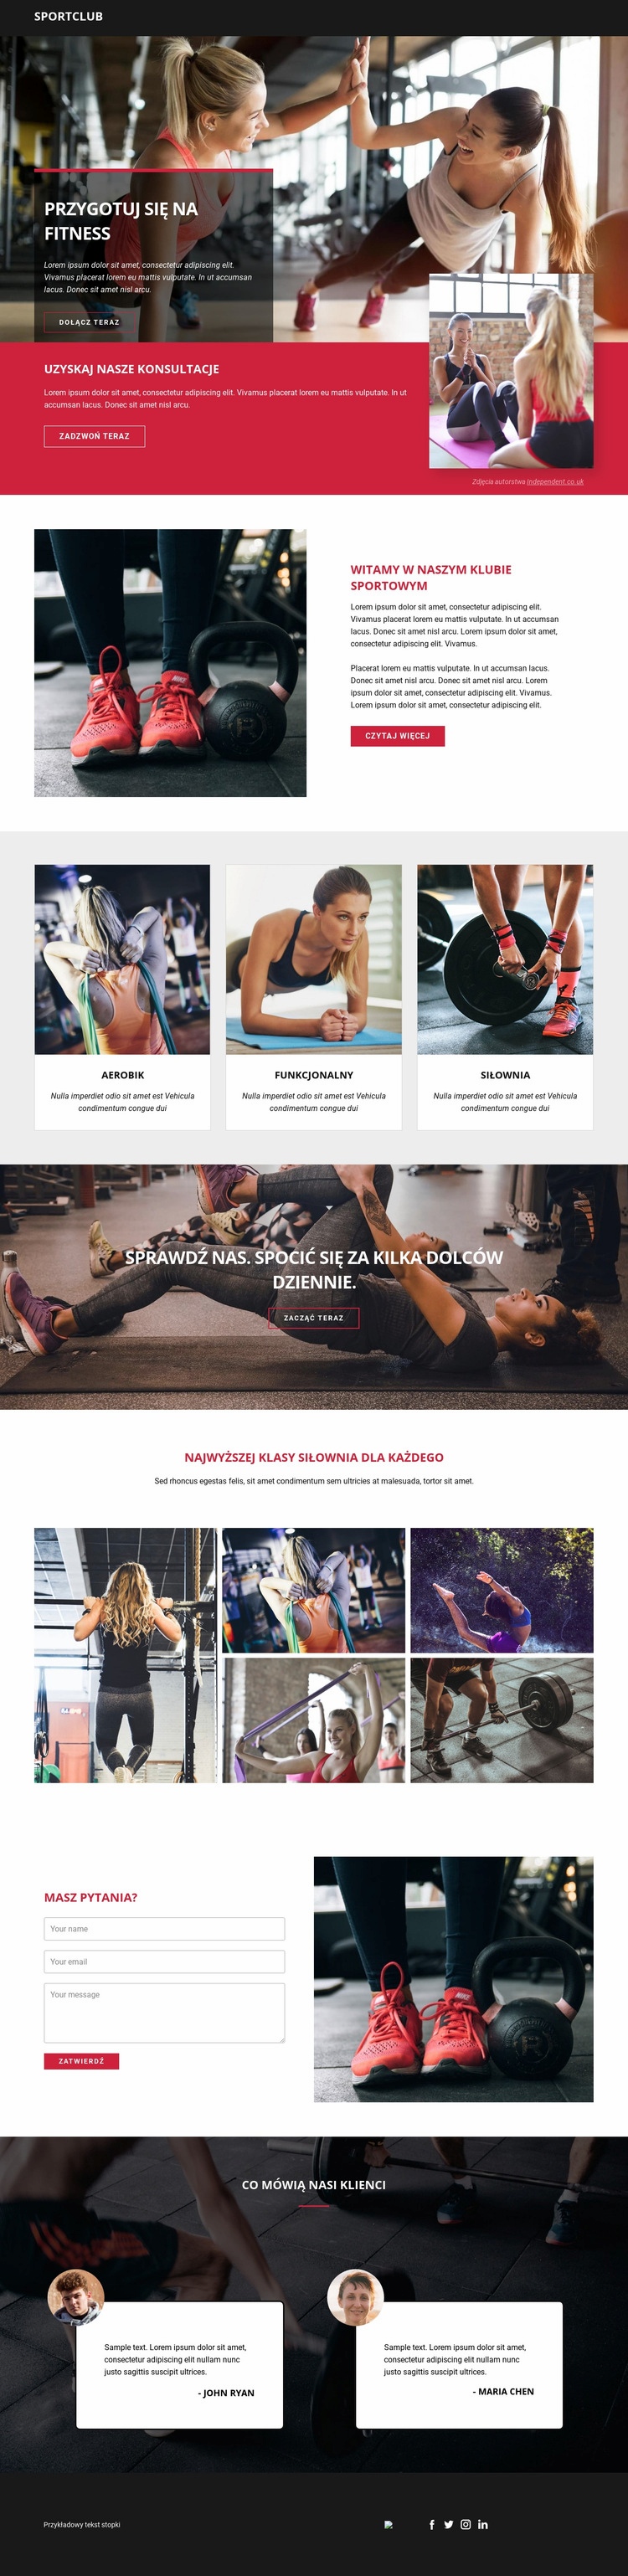 Gotowy do fitnessu i sportu Projekt strony internetowej